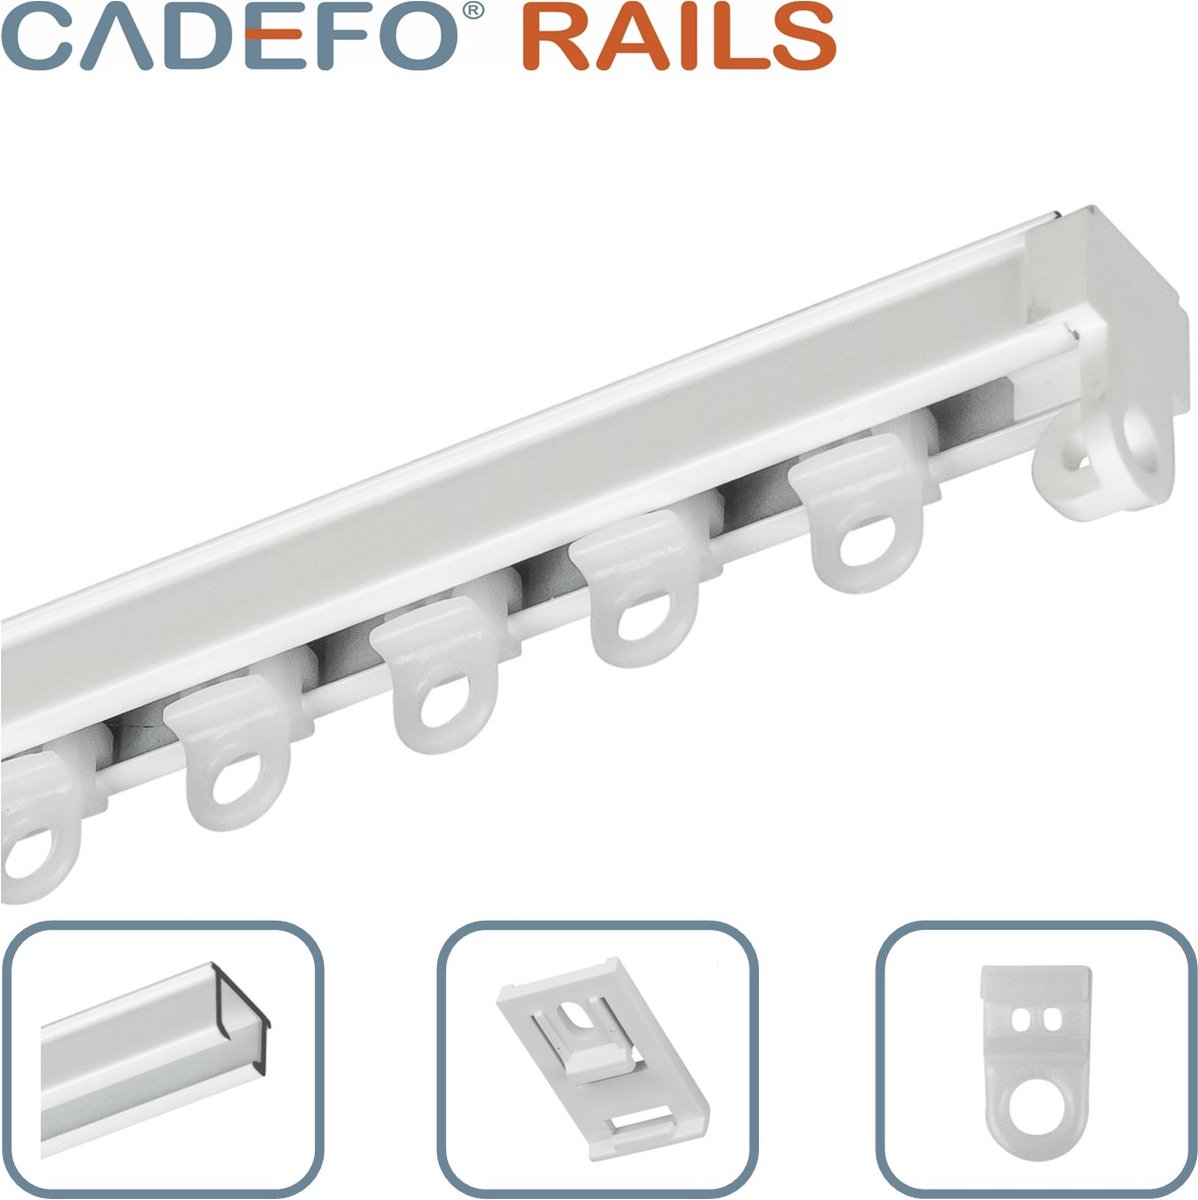 CADEFO RAILS (501 - 550 cm) Gordijnrails - Compleet op maat! - UIT 1 STUK - Leverbaar tot 6 meter - Plafondbevestiging - Lengte 503 cm